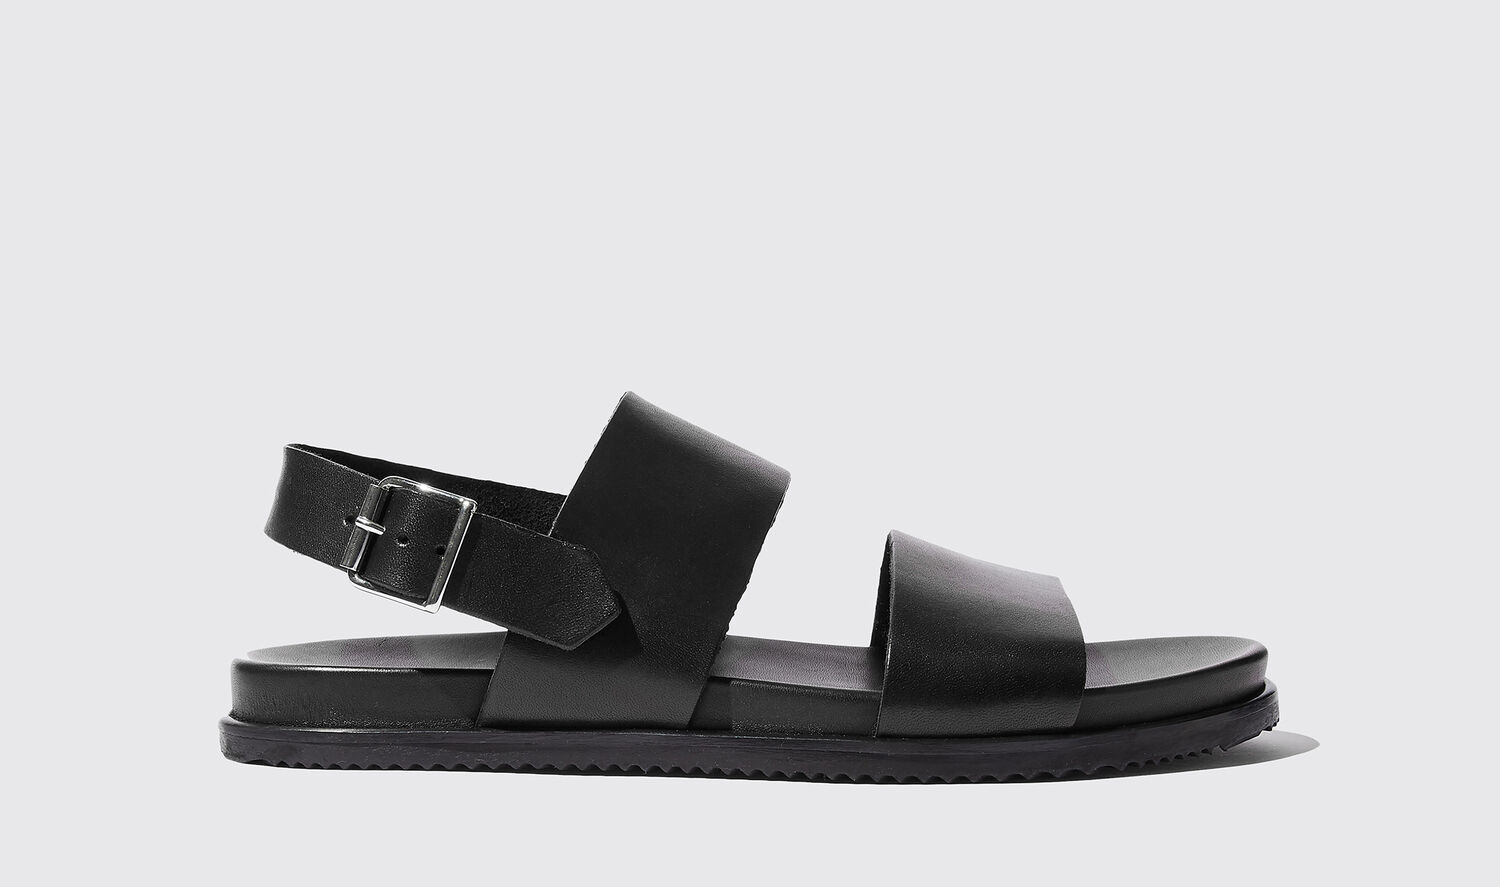 Scarosso Sandals Antonio Nero Calf Leather In Black Calf